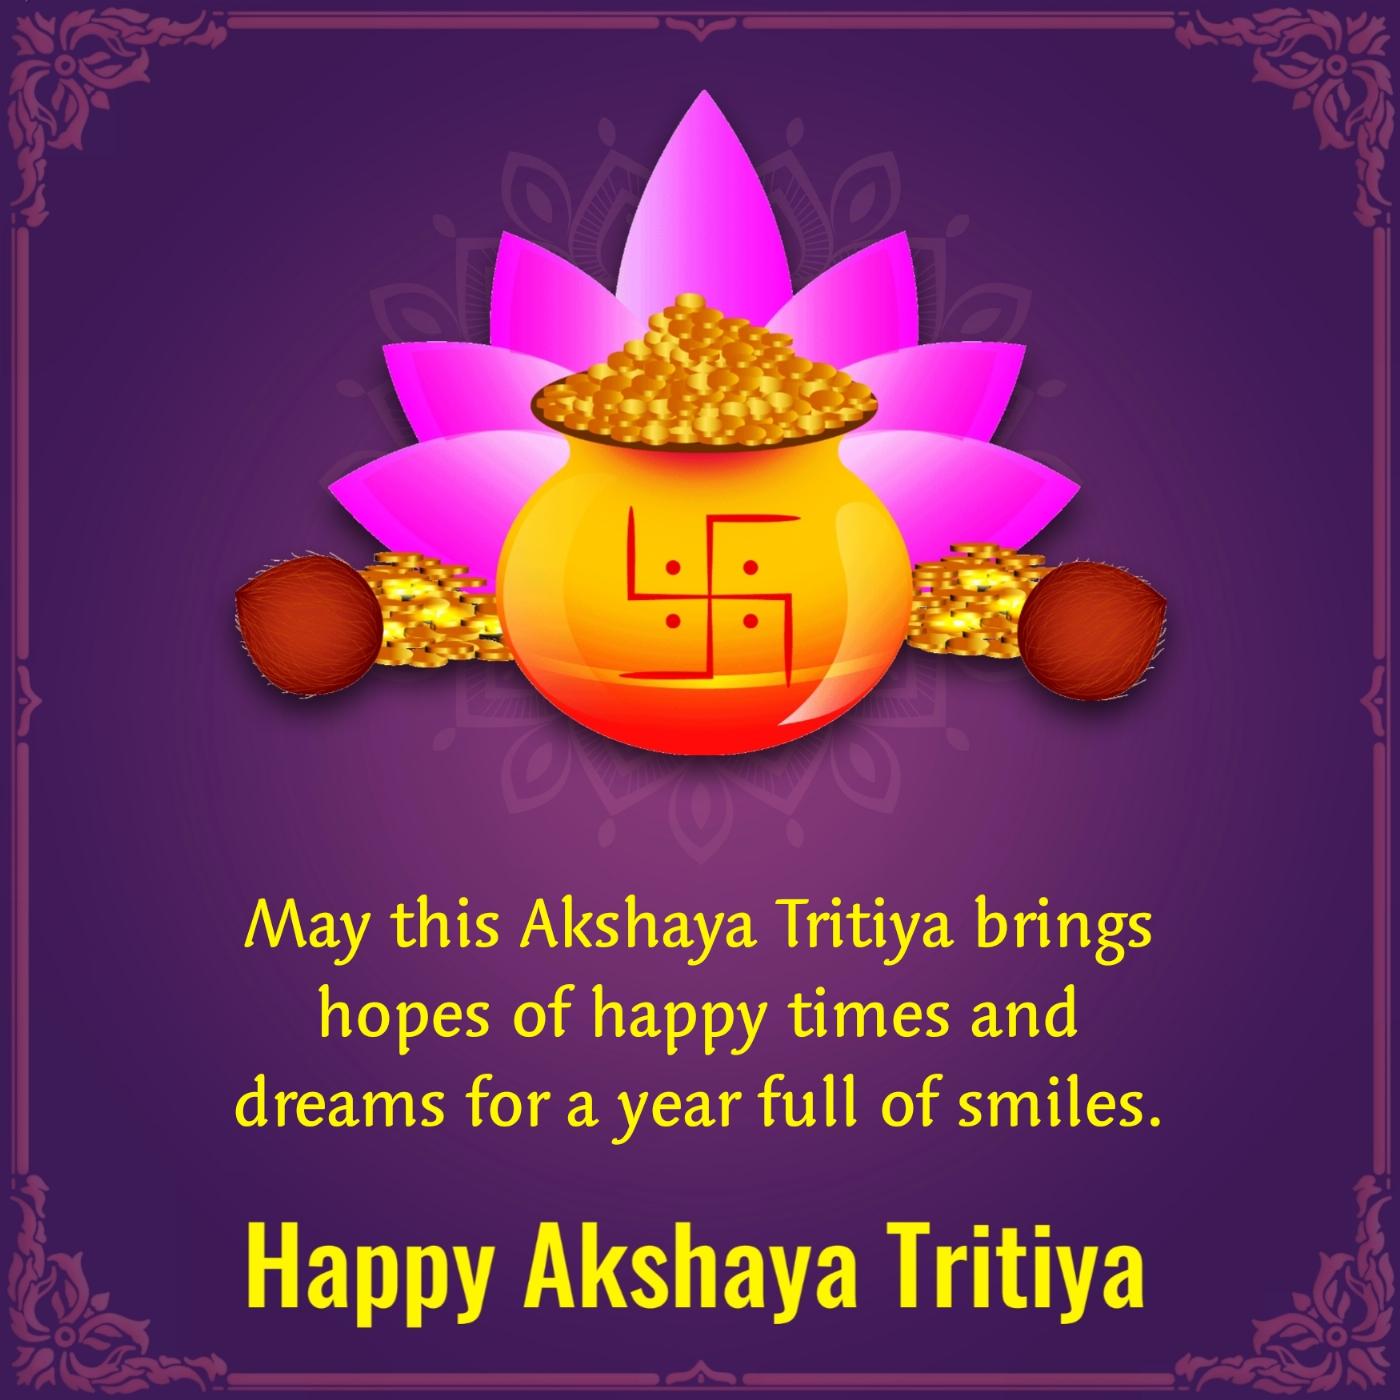 May this Akshaya Tritiya brings hopes of happy times and dreams